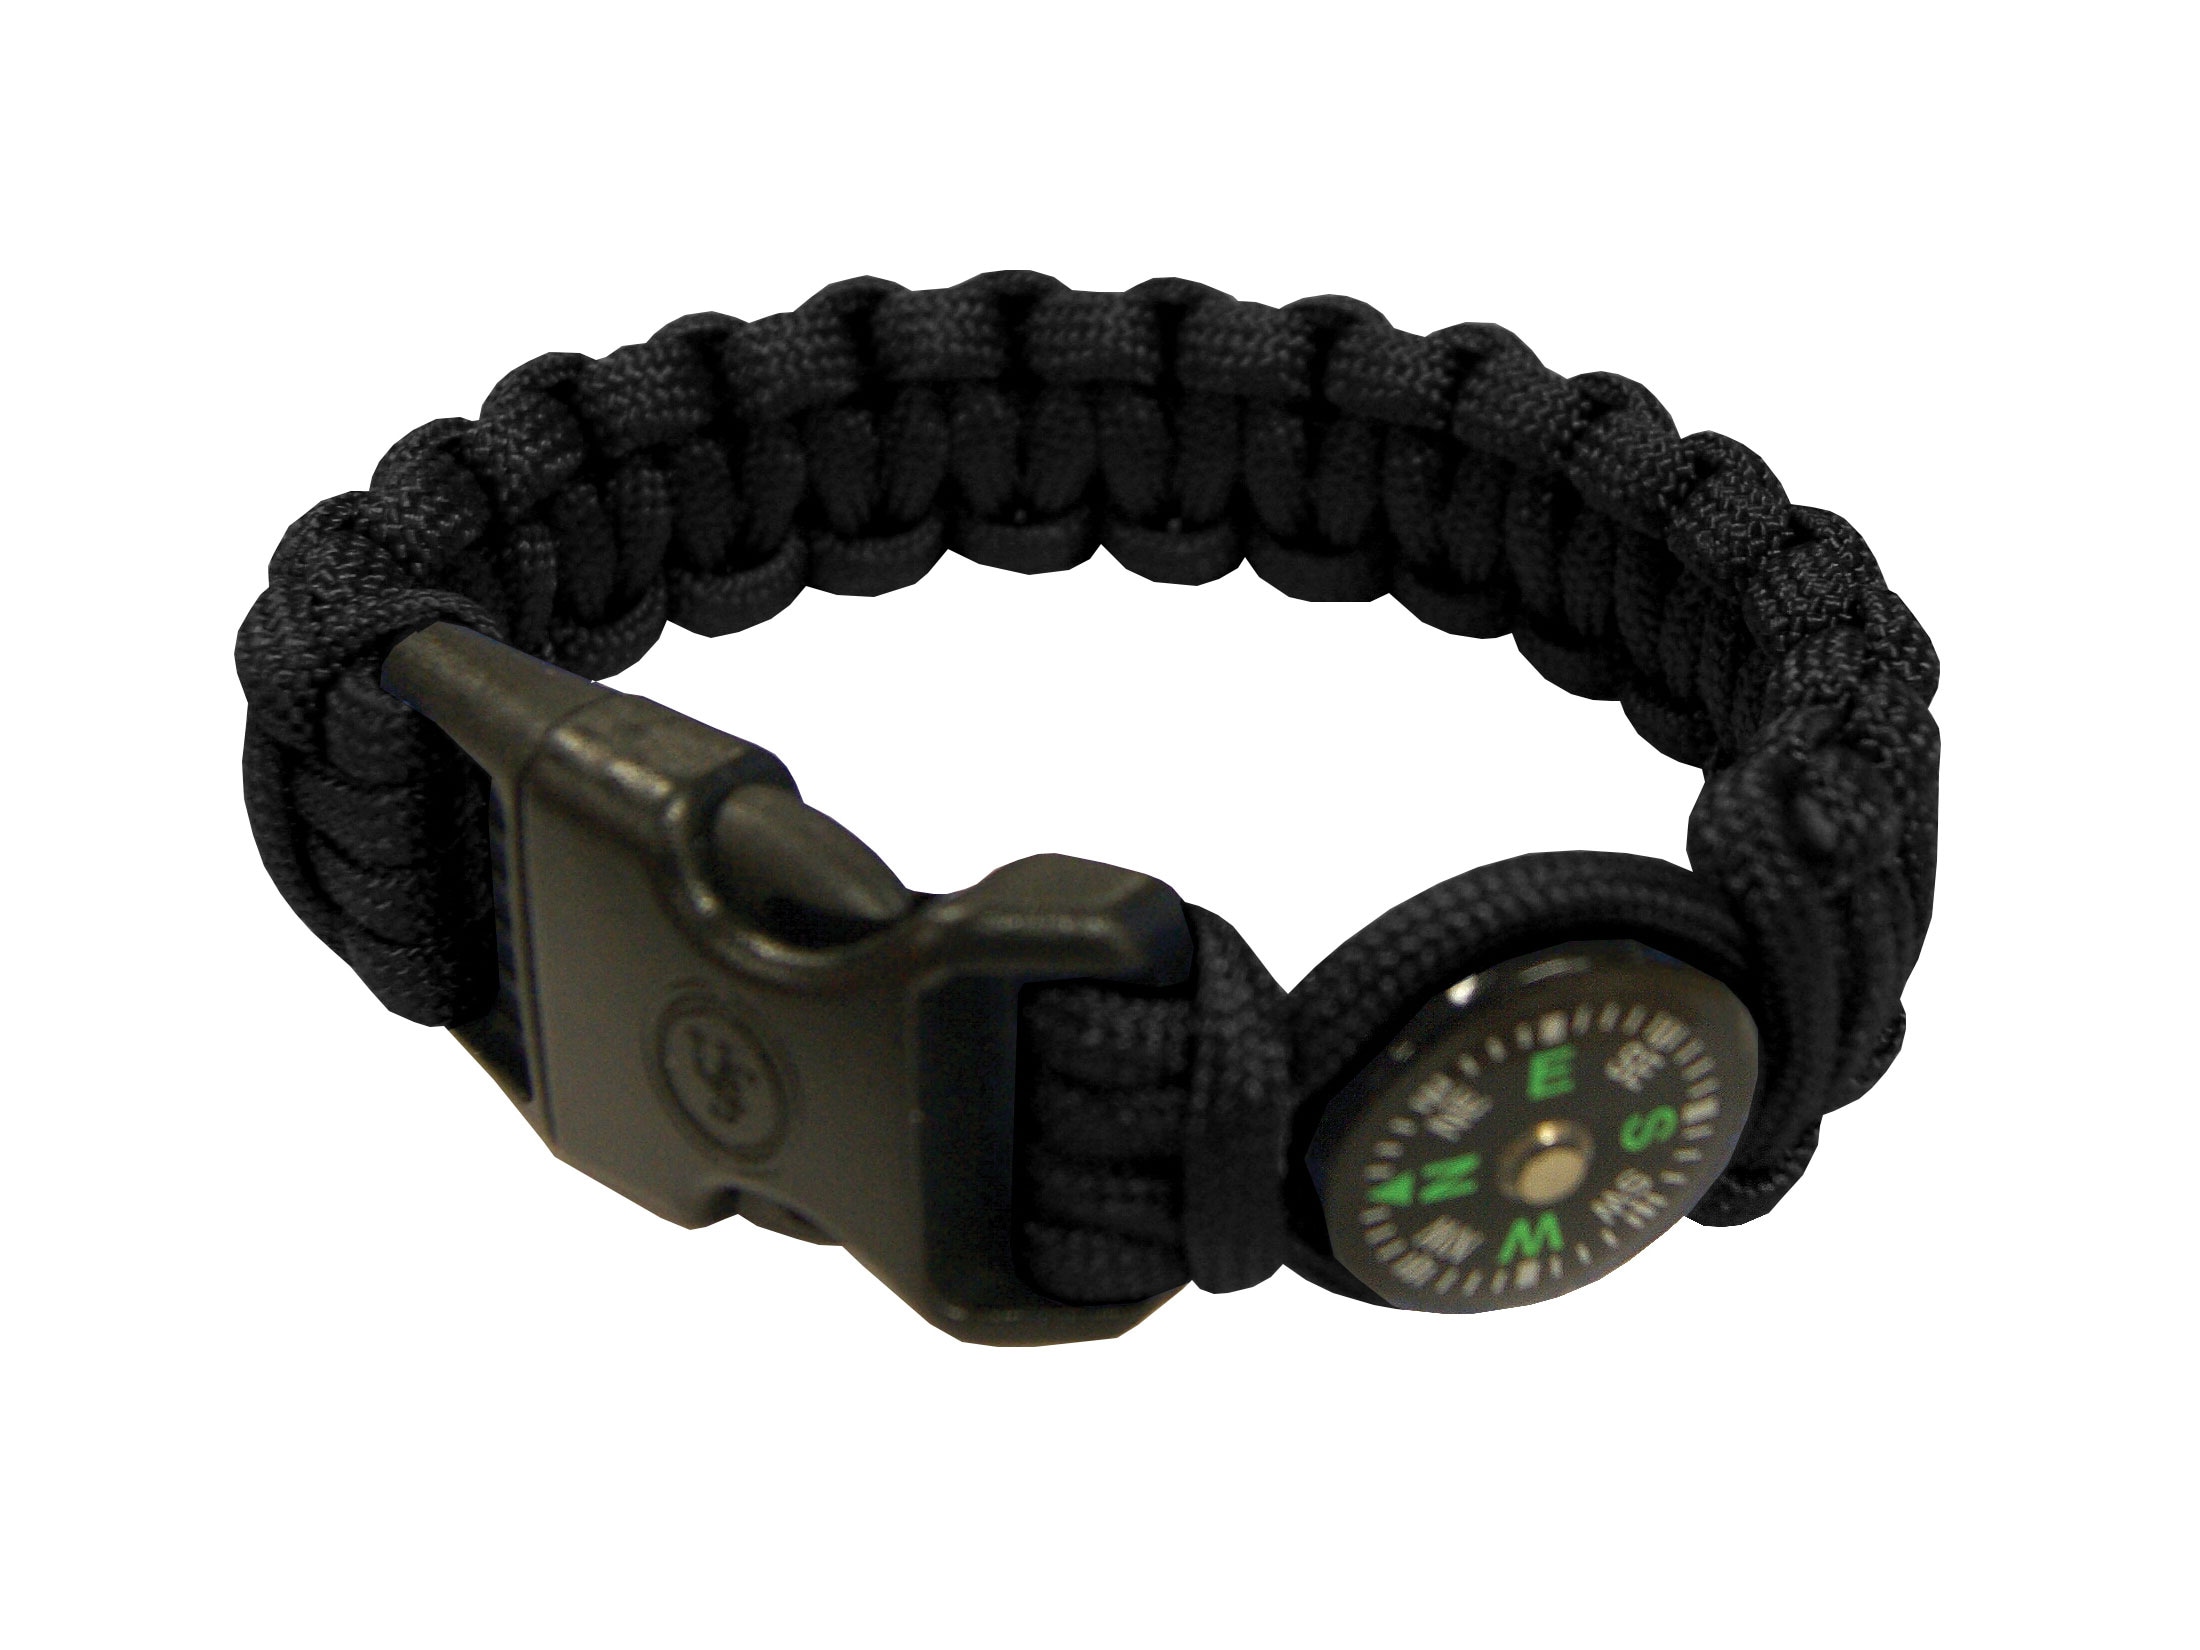 UST Paracord Survival Bracelet Compass Black